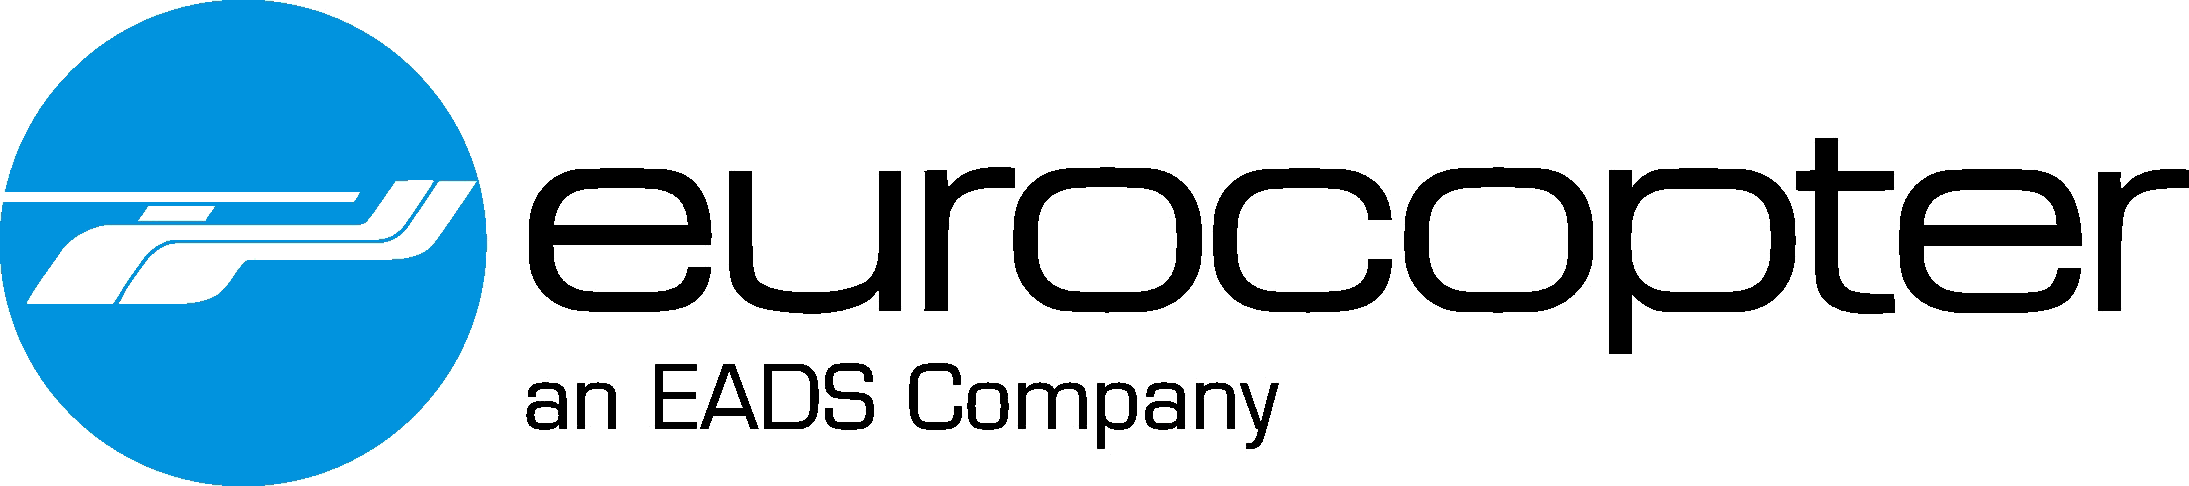 Eurocopter_logo